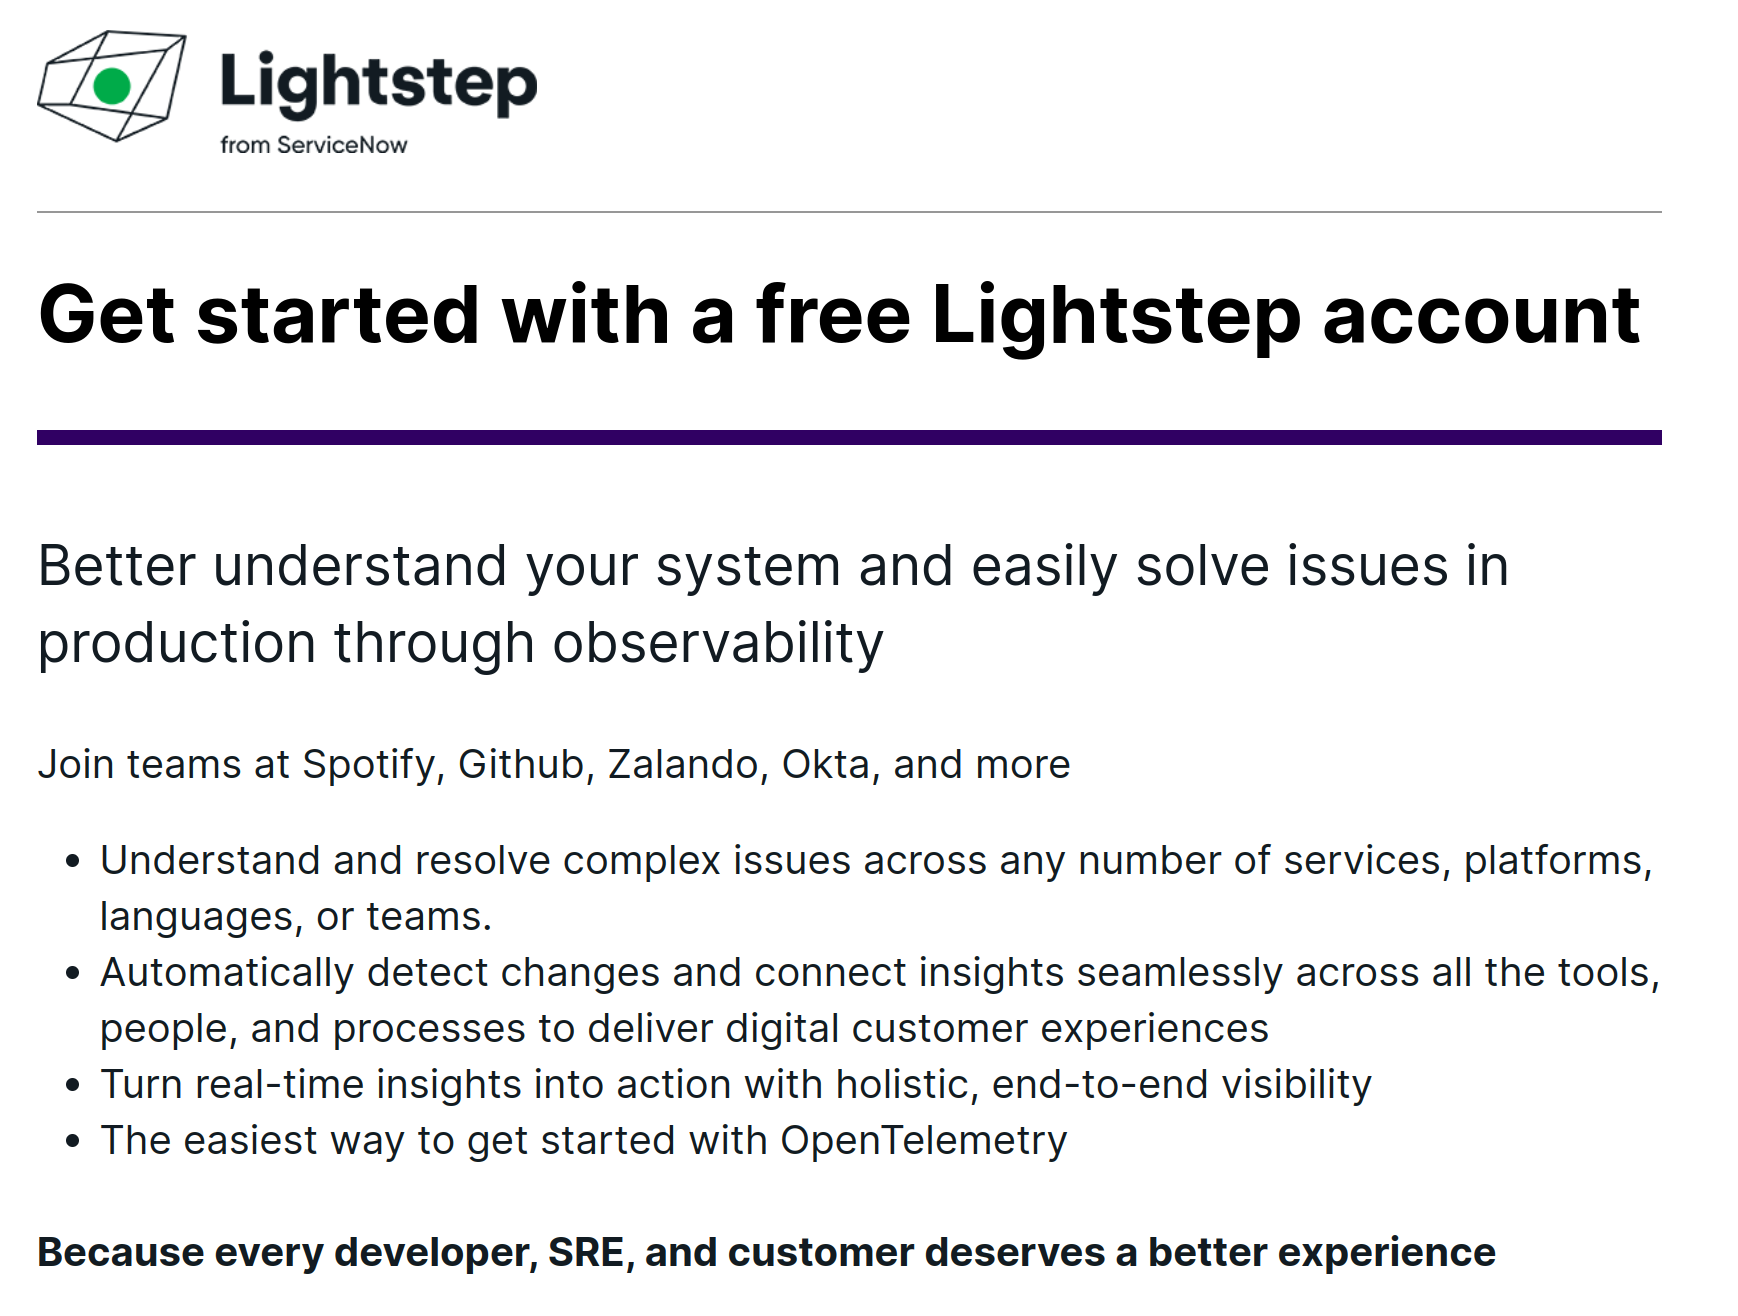 01-SQL-lightstep-sign-up